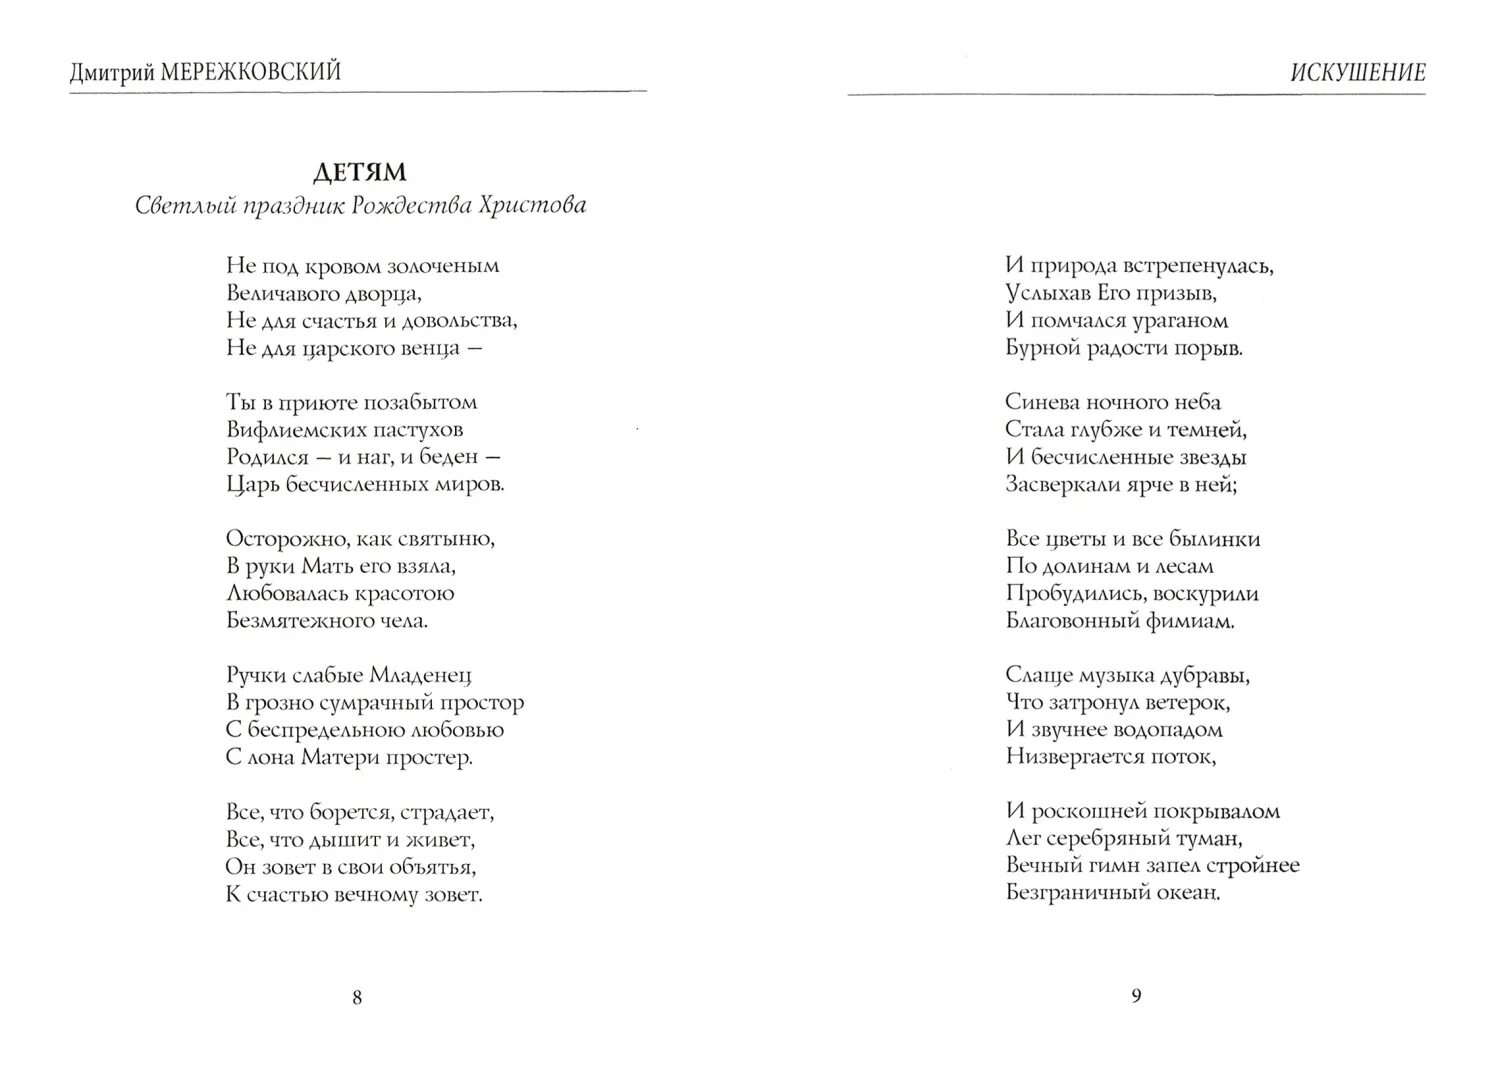 Поэма Дмитрия Мережковского.